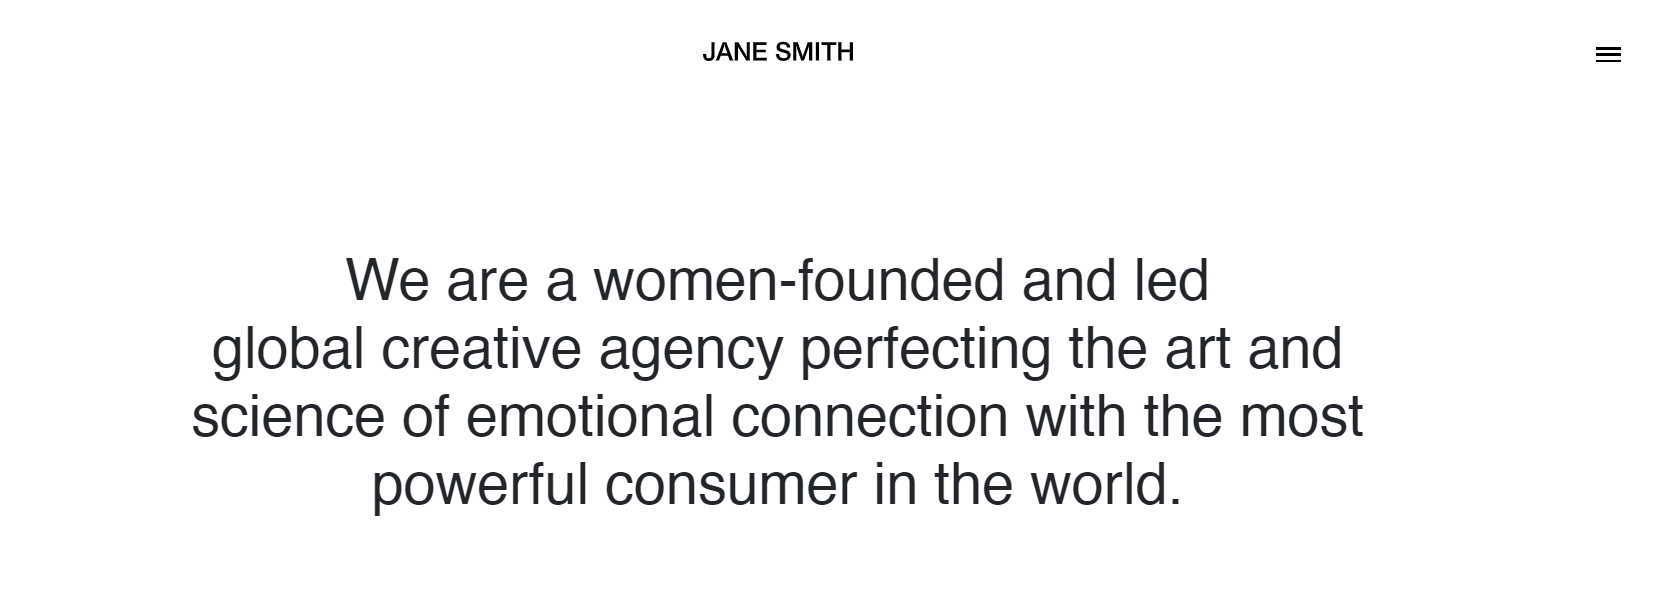 Jane Smith Agency